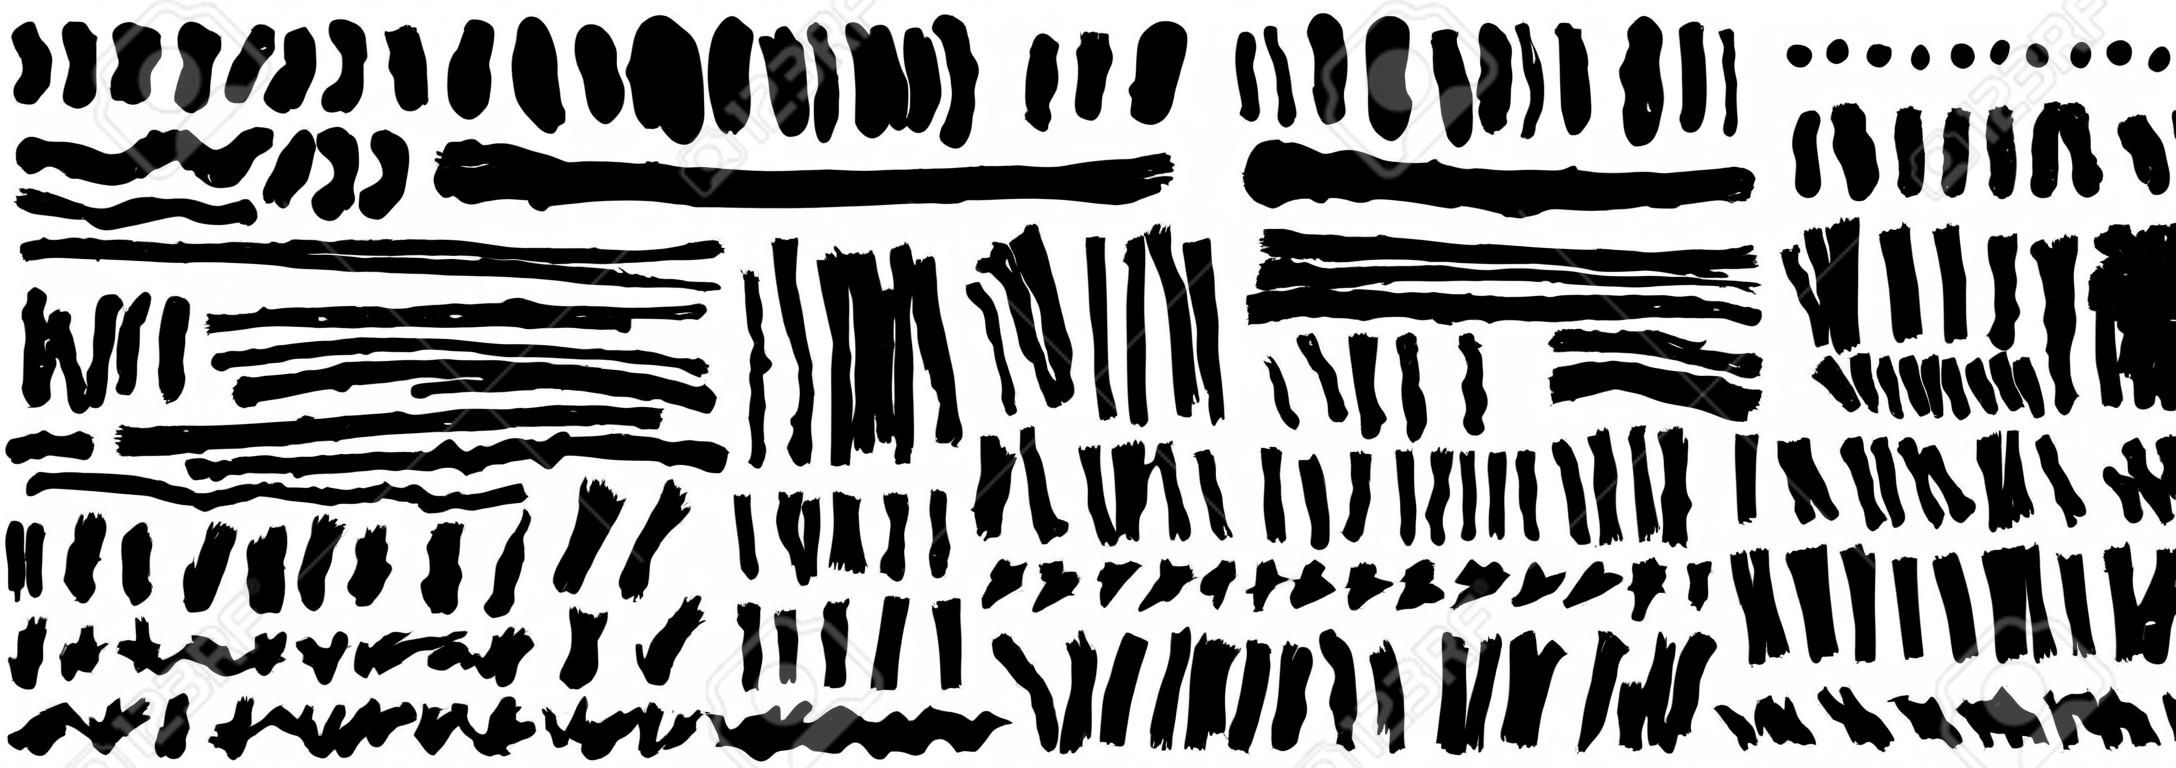 Conjunto de mano dibuja pintura negra, trazos de pincel de tinta, pinceles, líneas. Elementos de diseño grunge artístico sucio. Vector